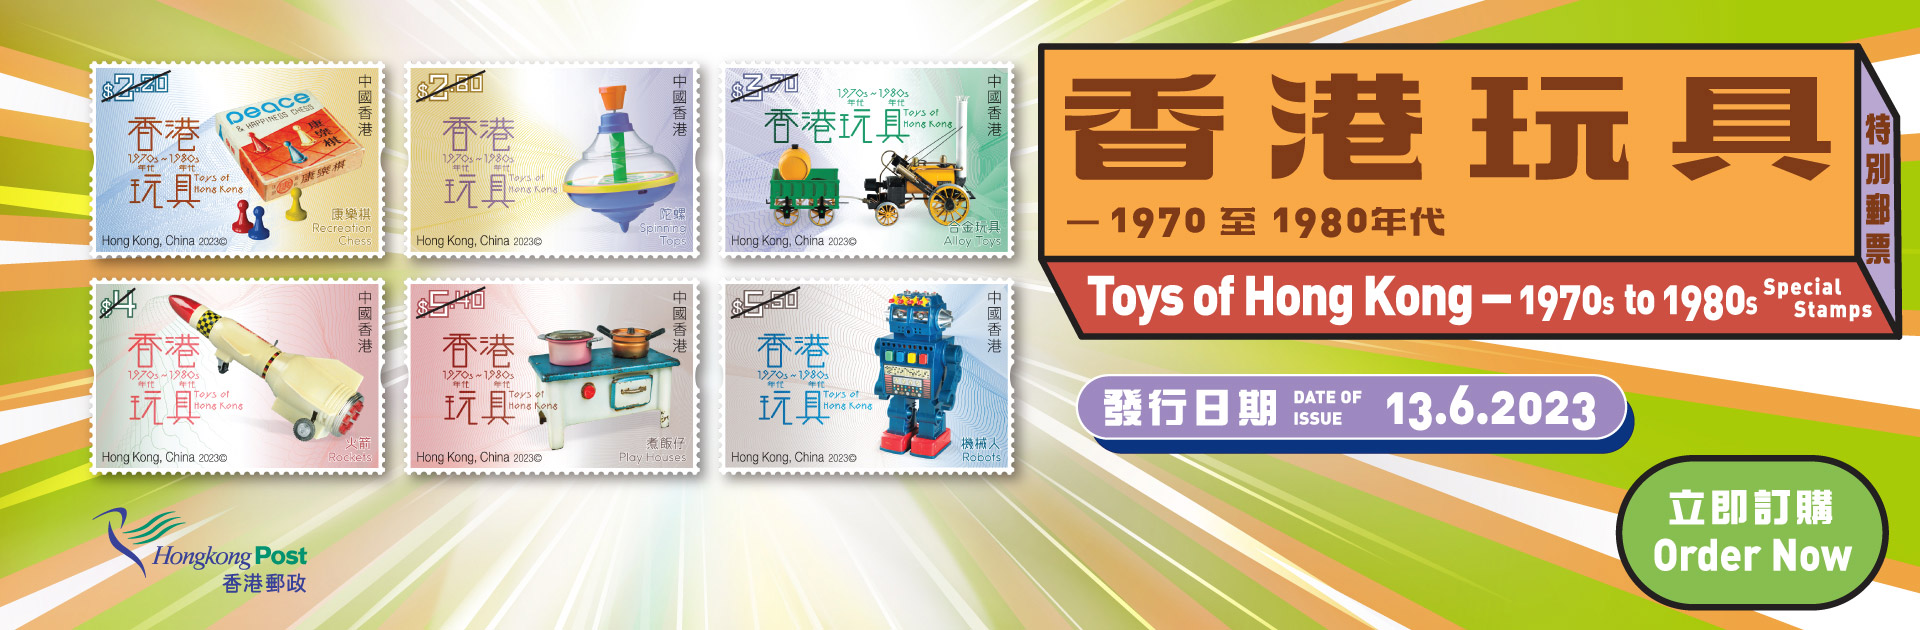 郵品訂購服務 - 「香港玩具 — 1970至1980年代」